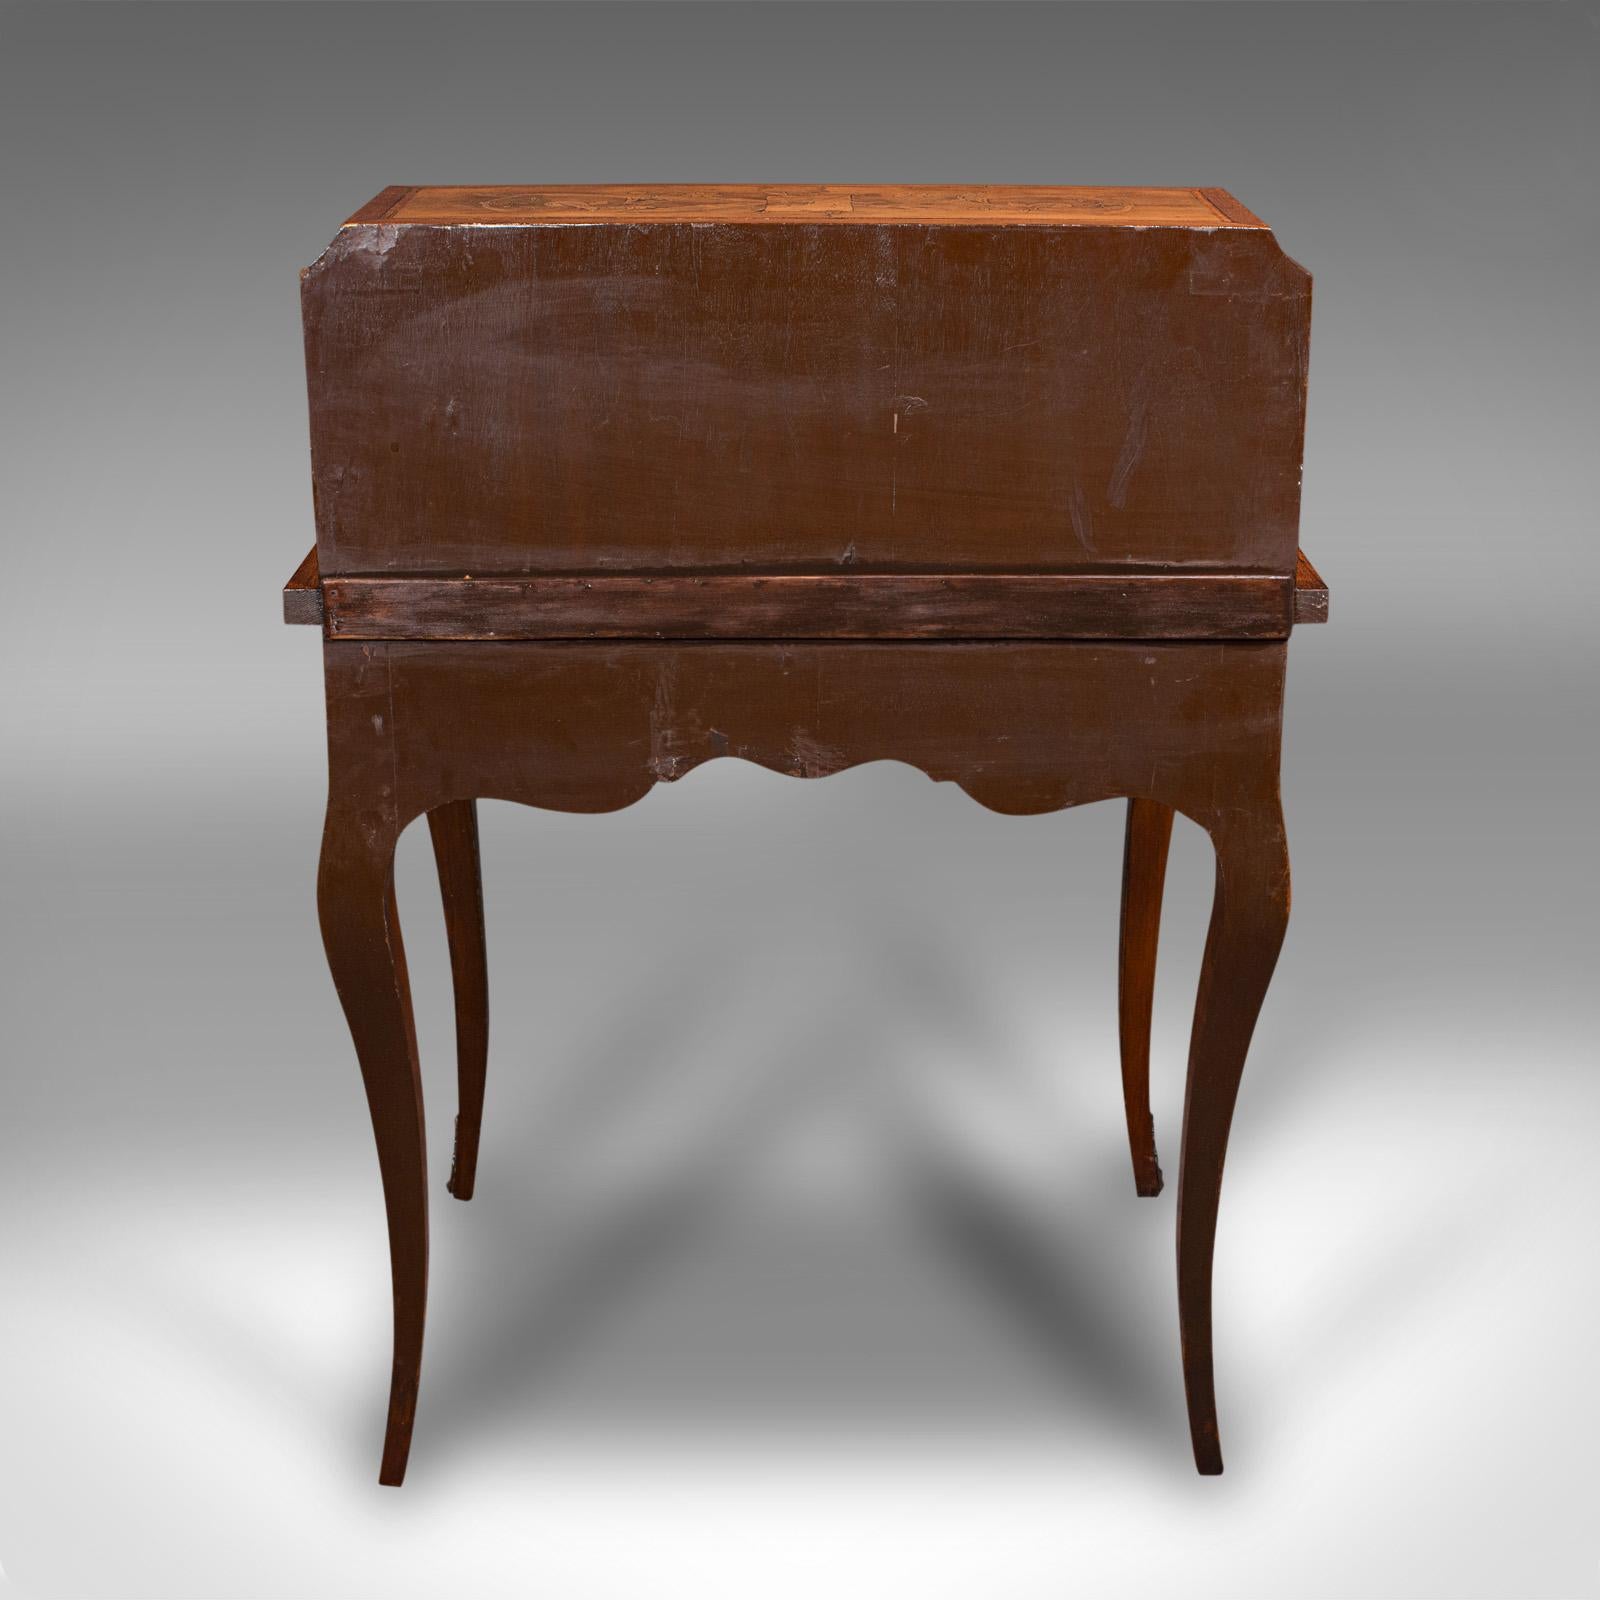 Antique Ladies Writing Desk, French, Walnut, Table, Bonheur Du Jour, Victorian 3